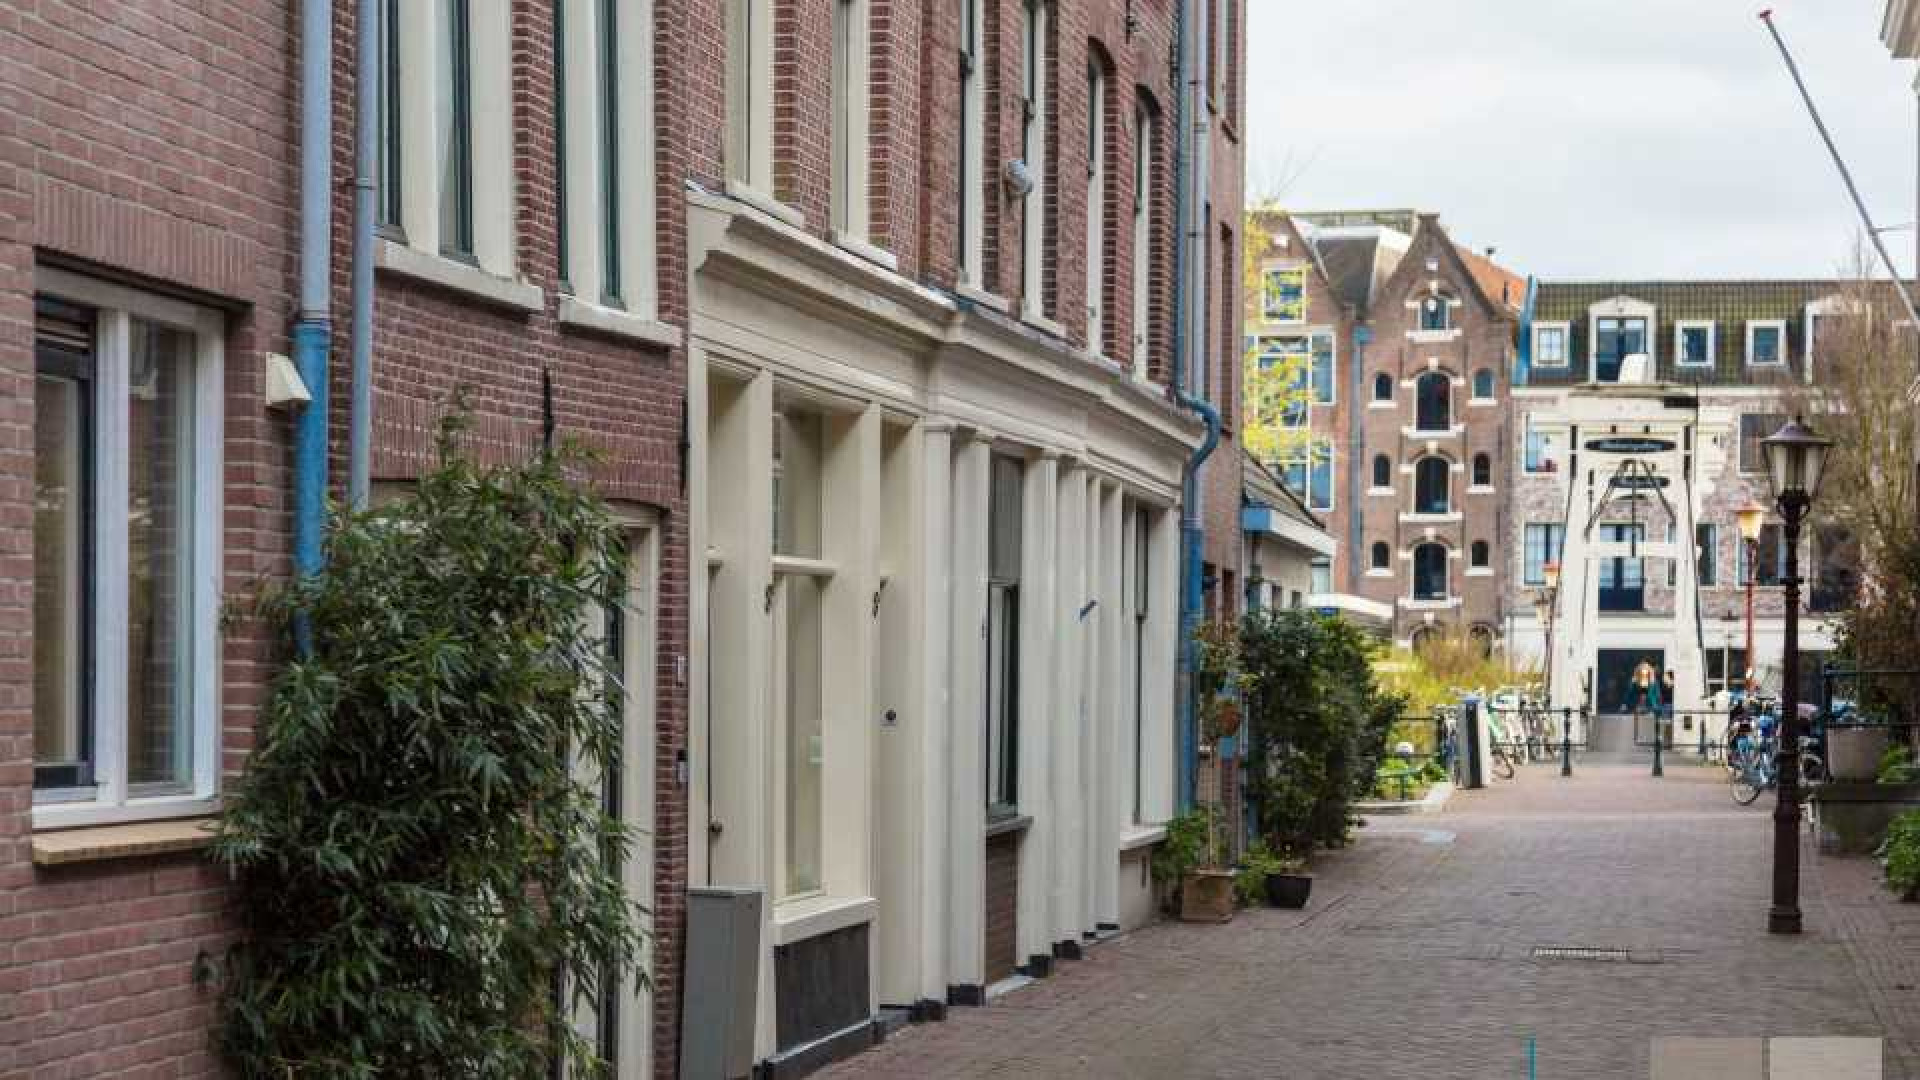 Rob Oudkerk zet scheidingshuis met korting weer in de verkoop. Zie foto's